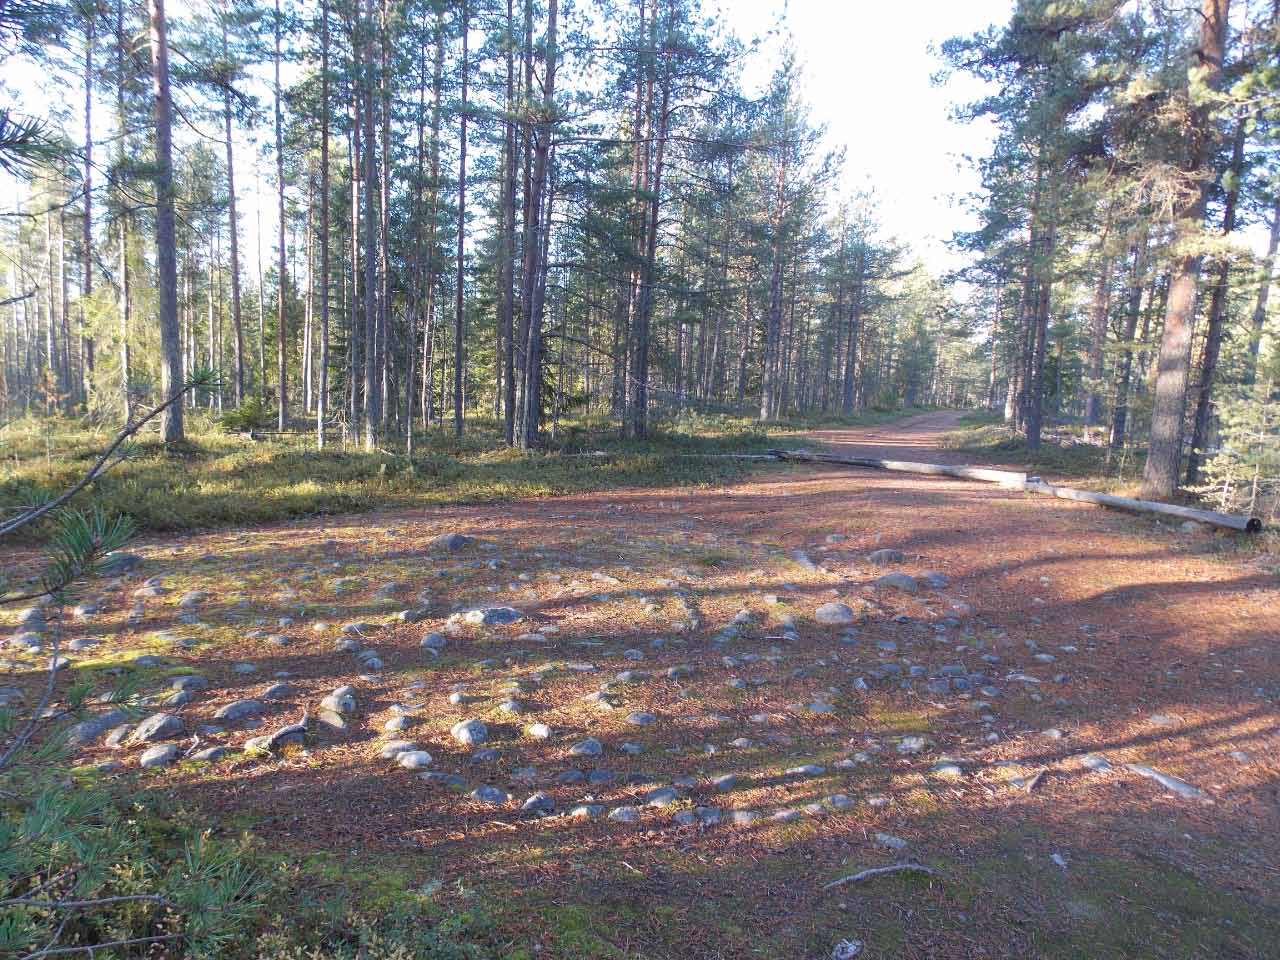 Kuva: Jatulintarha idästä. Pohjois-Pohjanmaan museo. CC BY 4.0 Mika Sarkkinen 16.10.2020